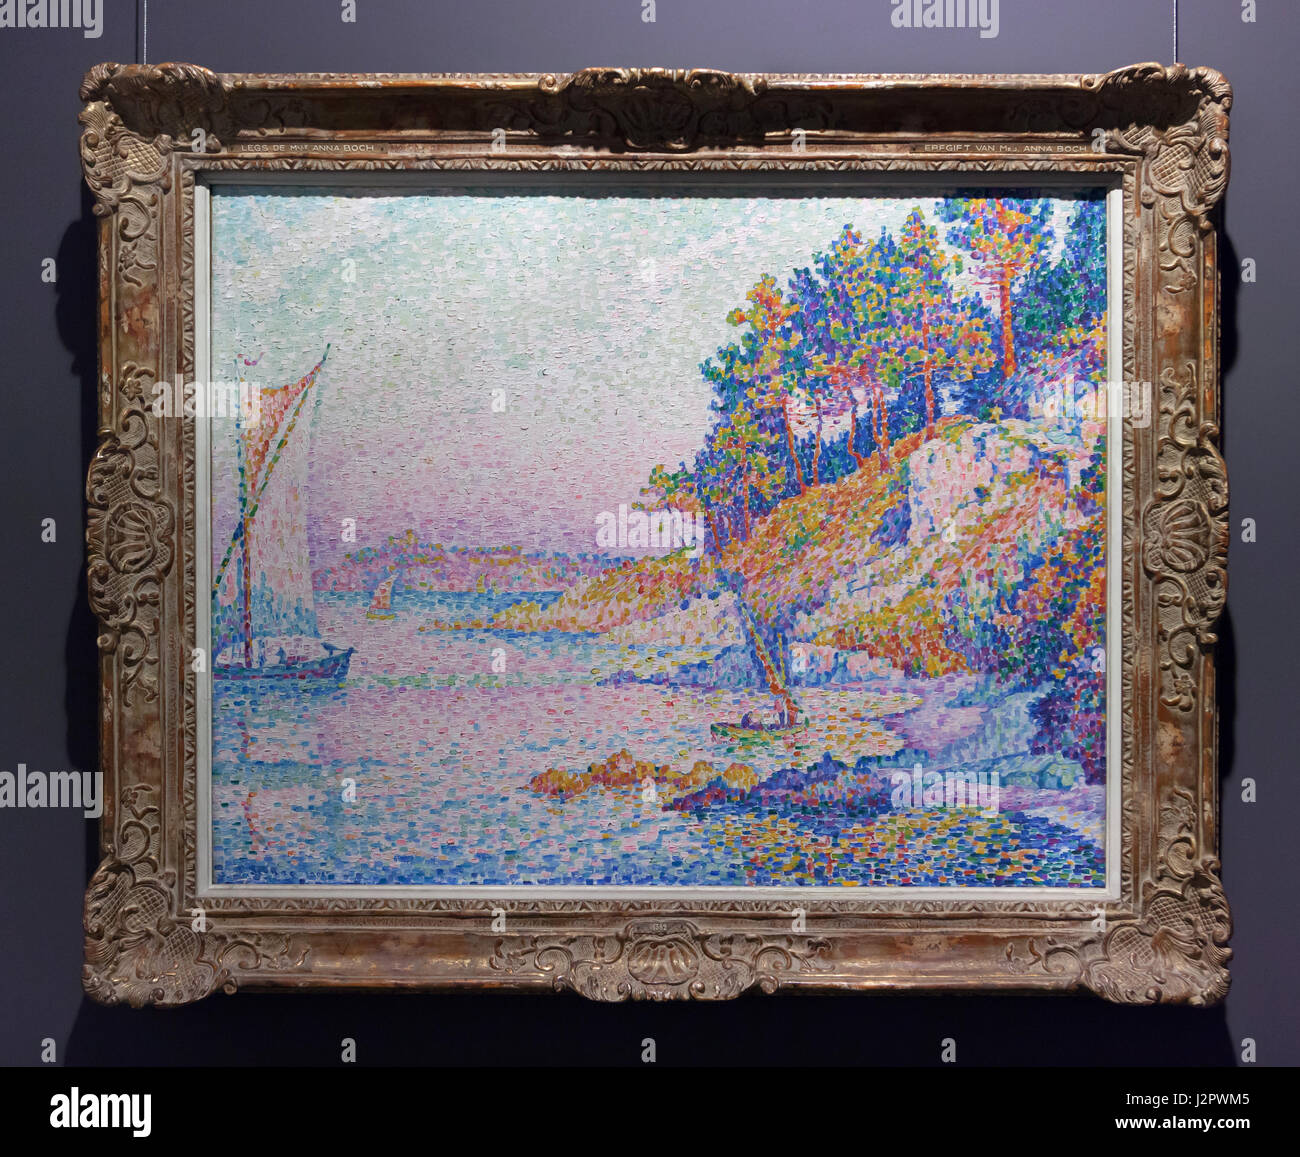 Peinture 'la Calanque' ('la Baie') par des néo-impressionnistes français peintre Paul Signac (1906) sur l'affichage dans les Musées royaux des beaux-arts de Bruxelles, Belgique. Banque D'Images